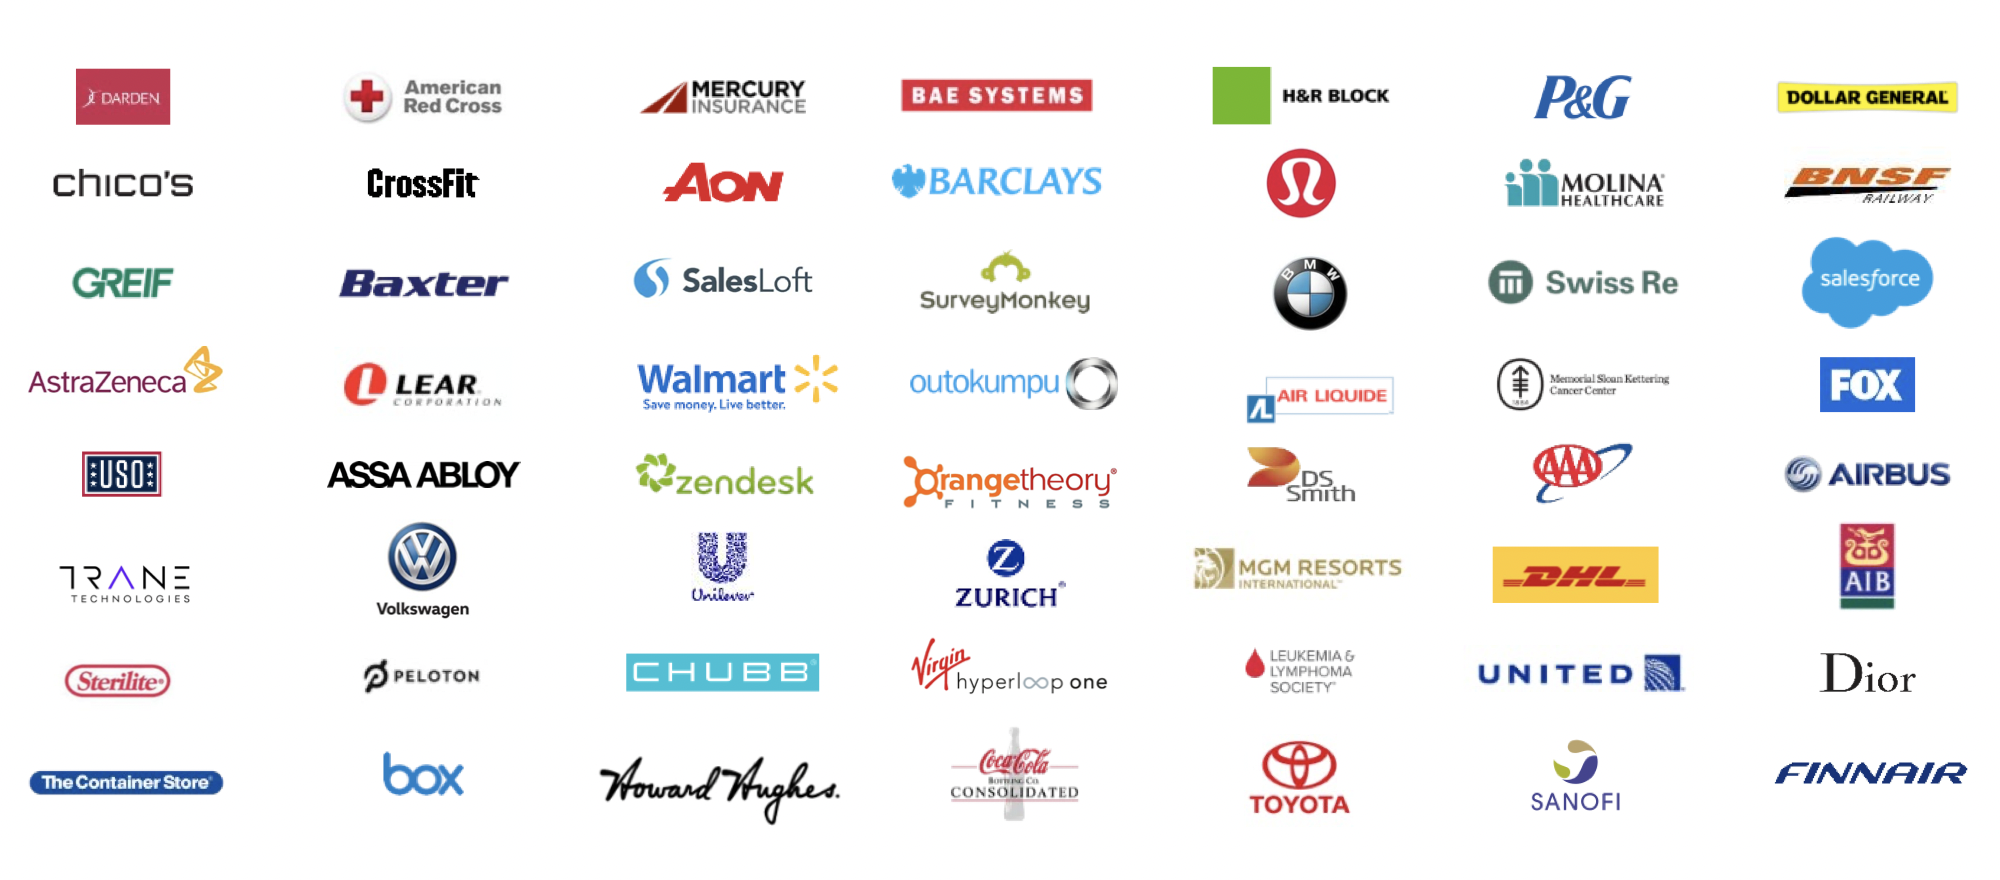 Логотипы клиентов компании. Источник: презентация компании, слайд 7